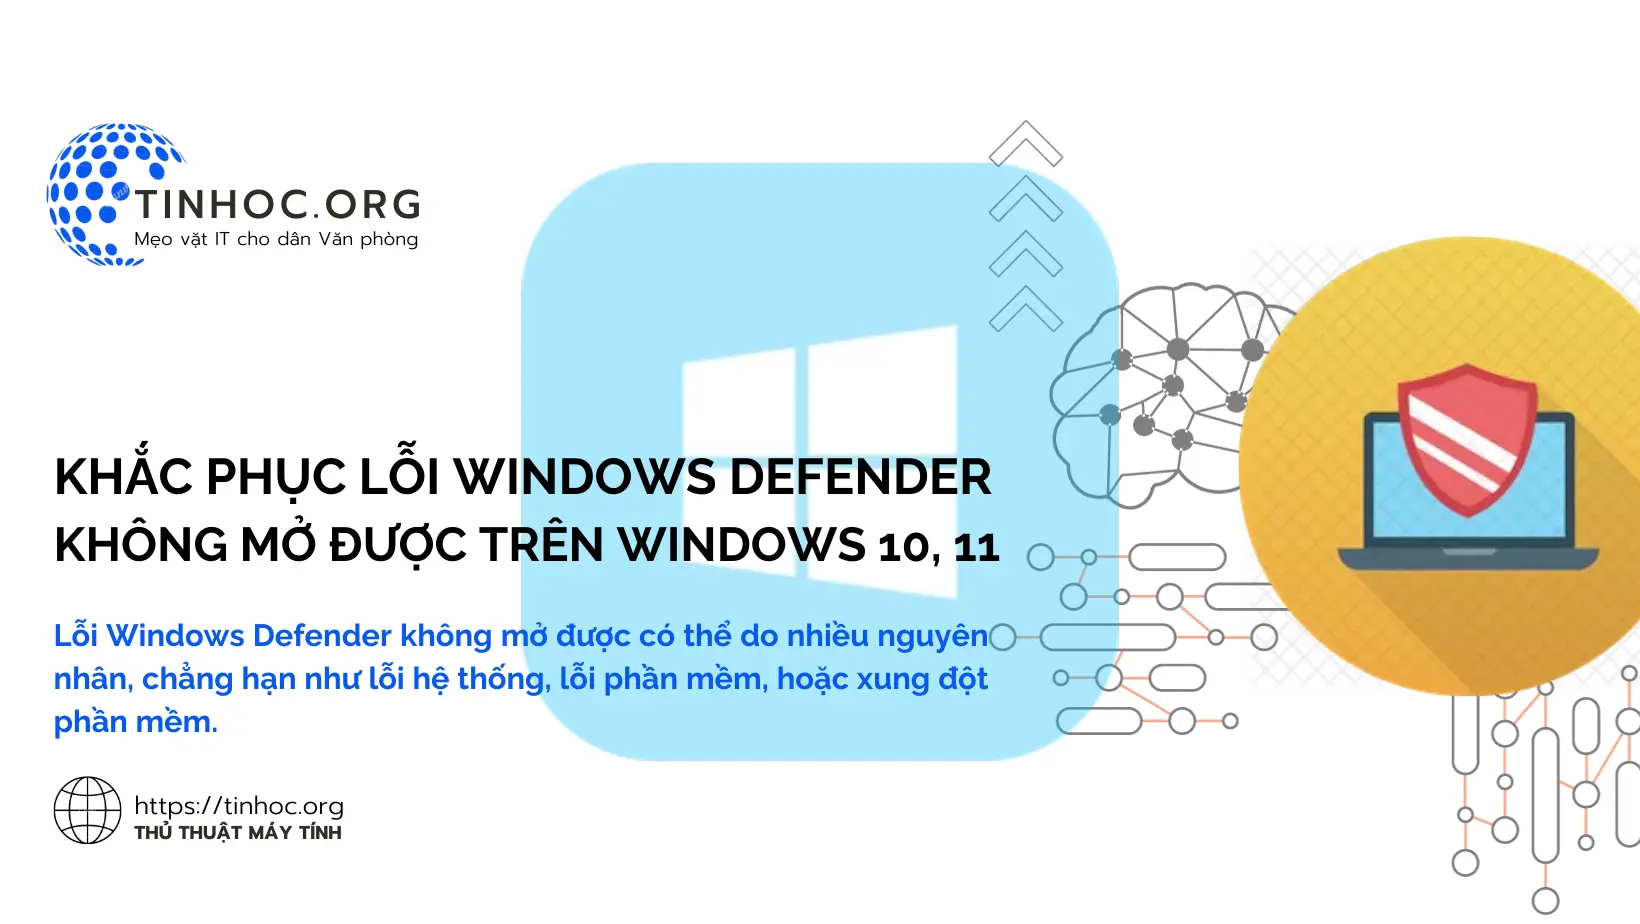 Lỗi Windows Defender không mở được có thể do nhiều nguyên nhân, chẳng hạn như lỗi hệ thống, lỗi phần mềm, hoặc xung đột phần mềm.